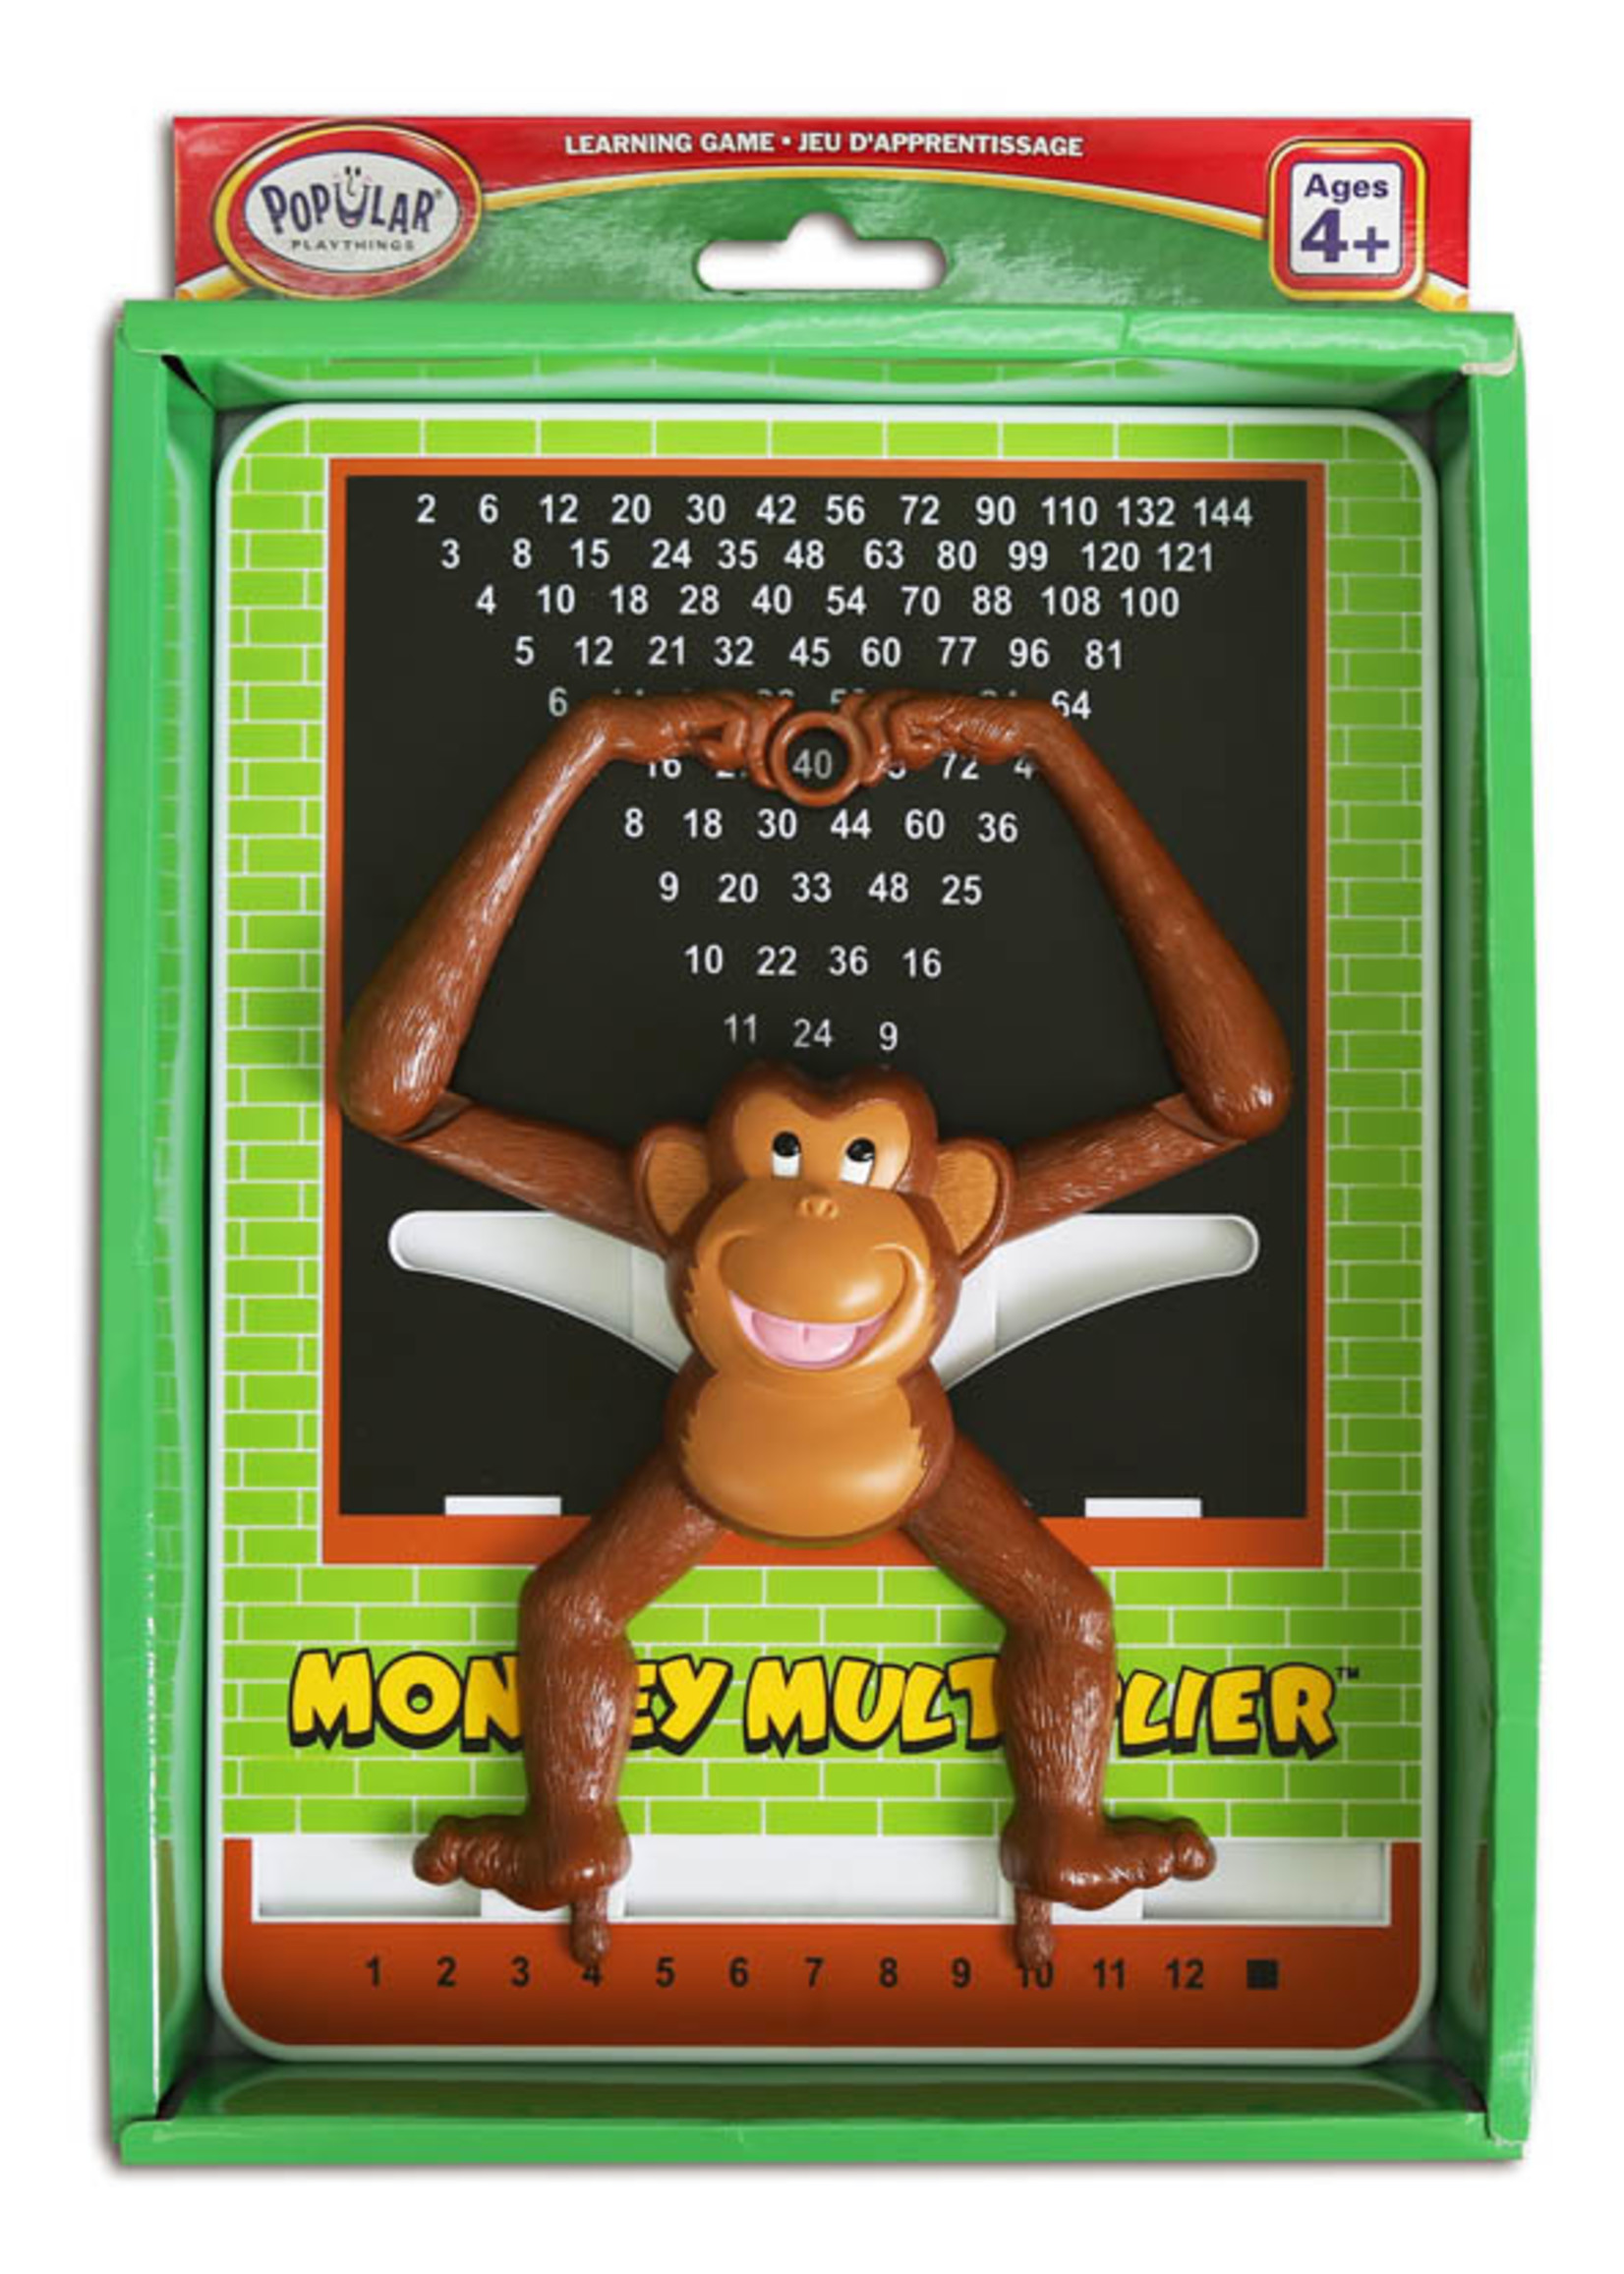 Popular playthings Monkey calculator - Multiplicateur (Bil)